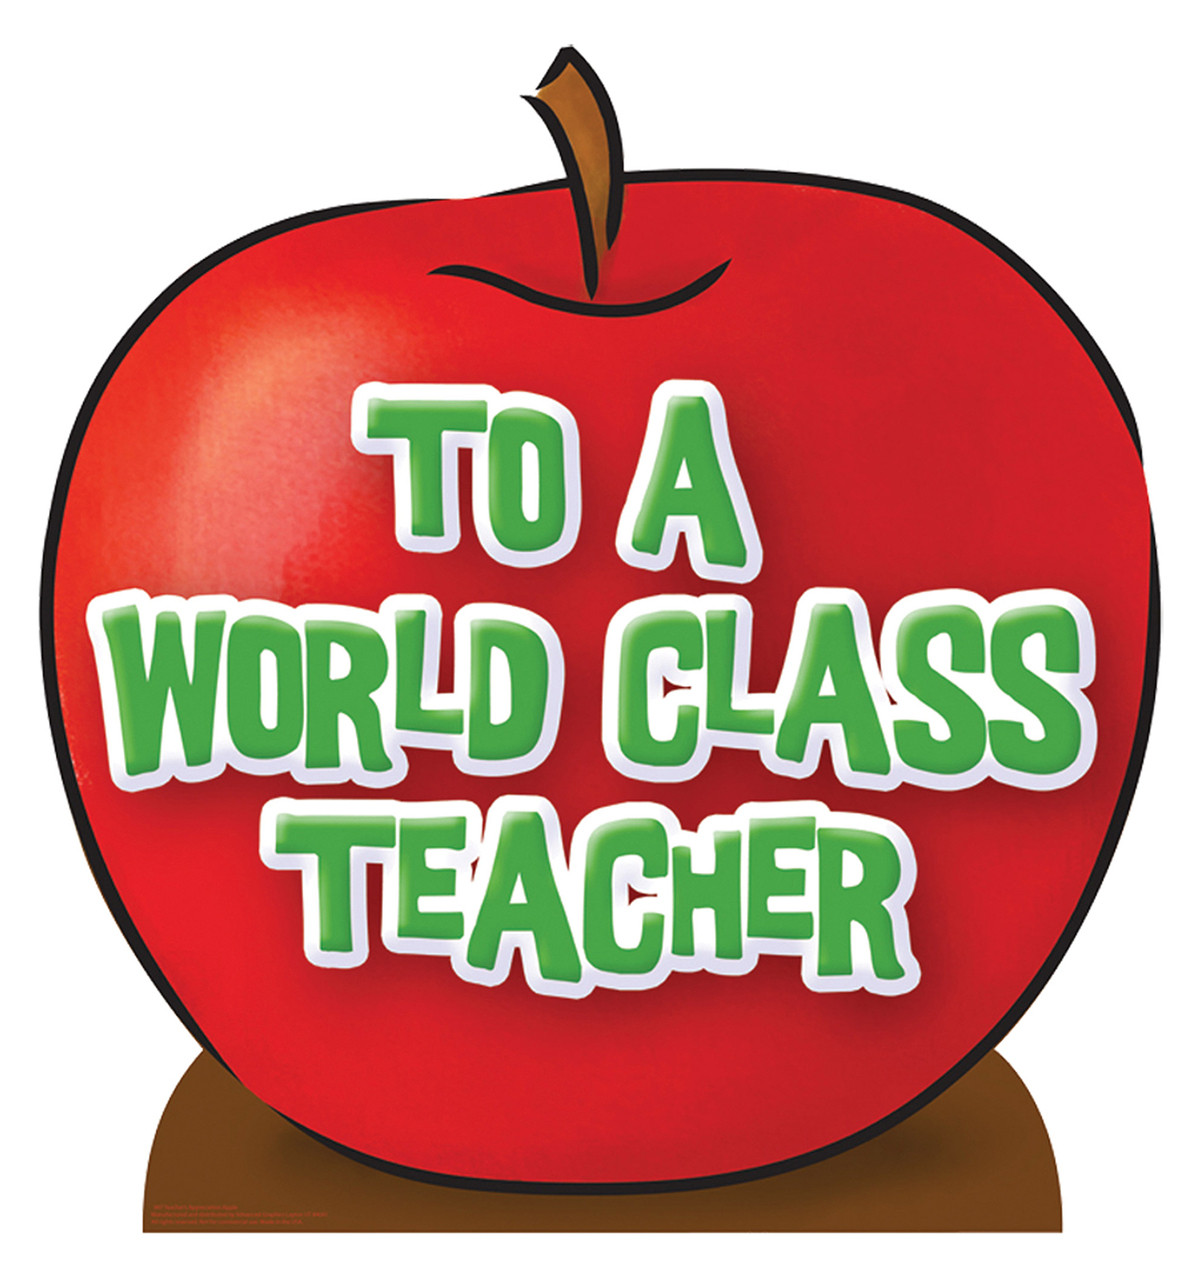 Apple Teacher Straw Topper